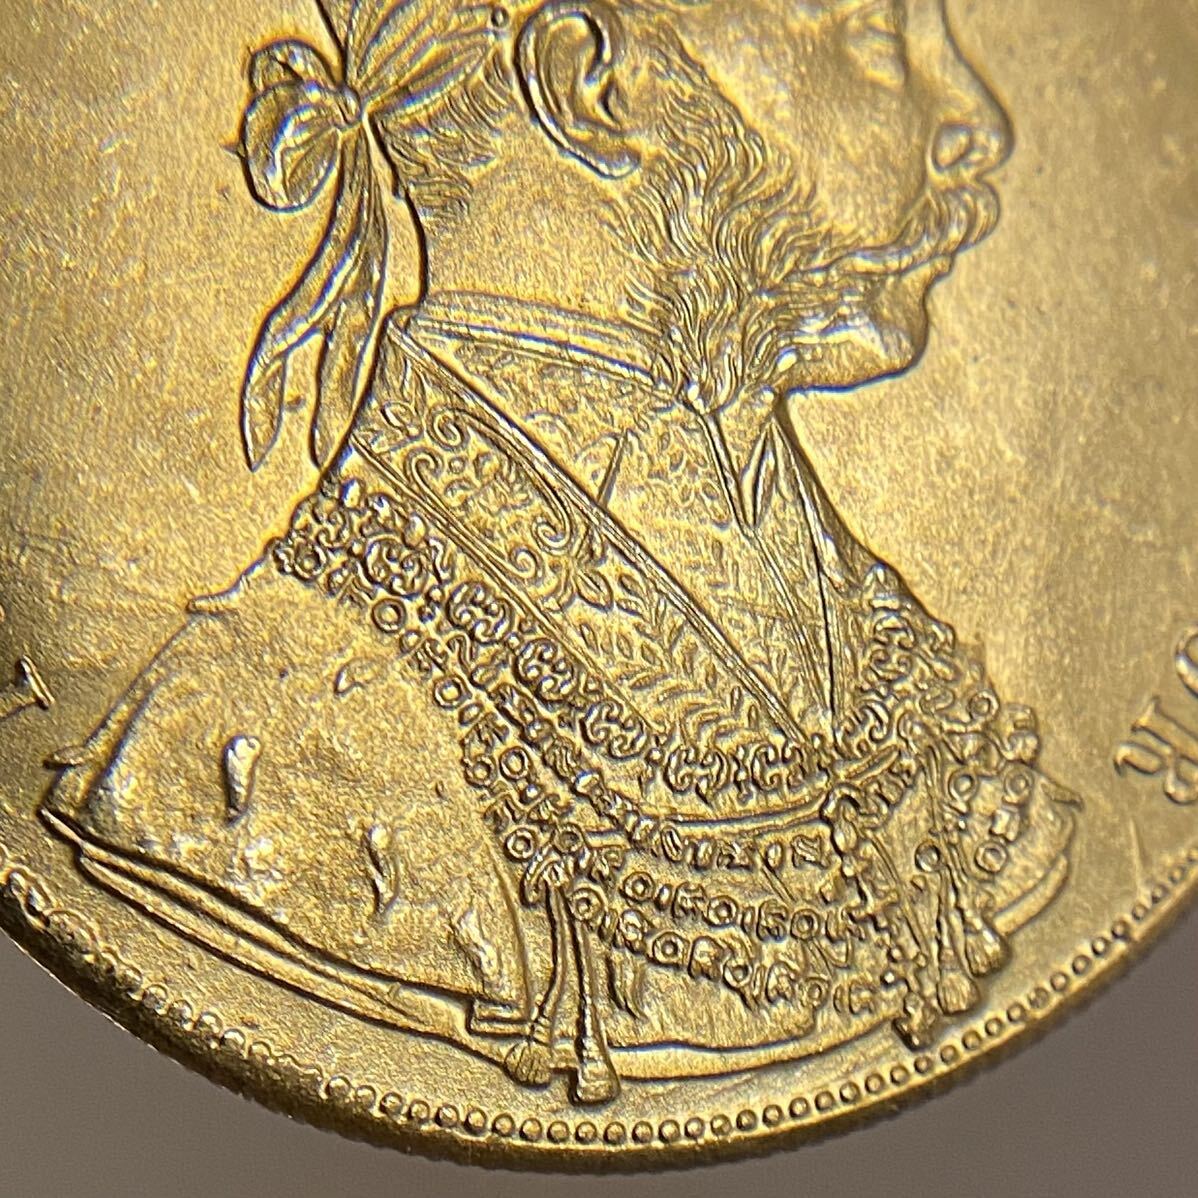 金貨 オーストリア帝国 硬貨 古銭 約14.71g フランツ・ヨーゼフ 1 世 1877年 クラウン 国章 紋章 双頭の鷲 4ダカット コイン 海外硬貨 の画像4